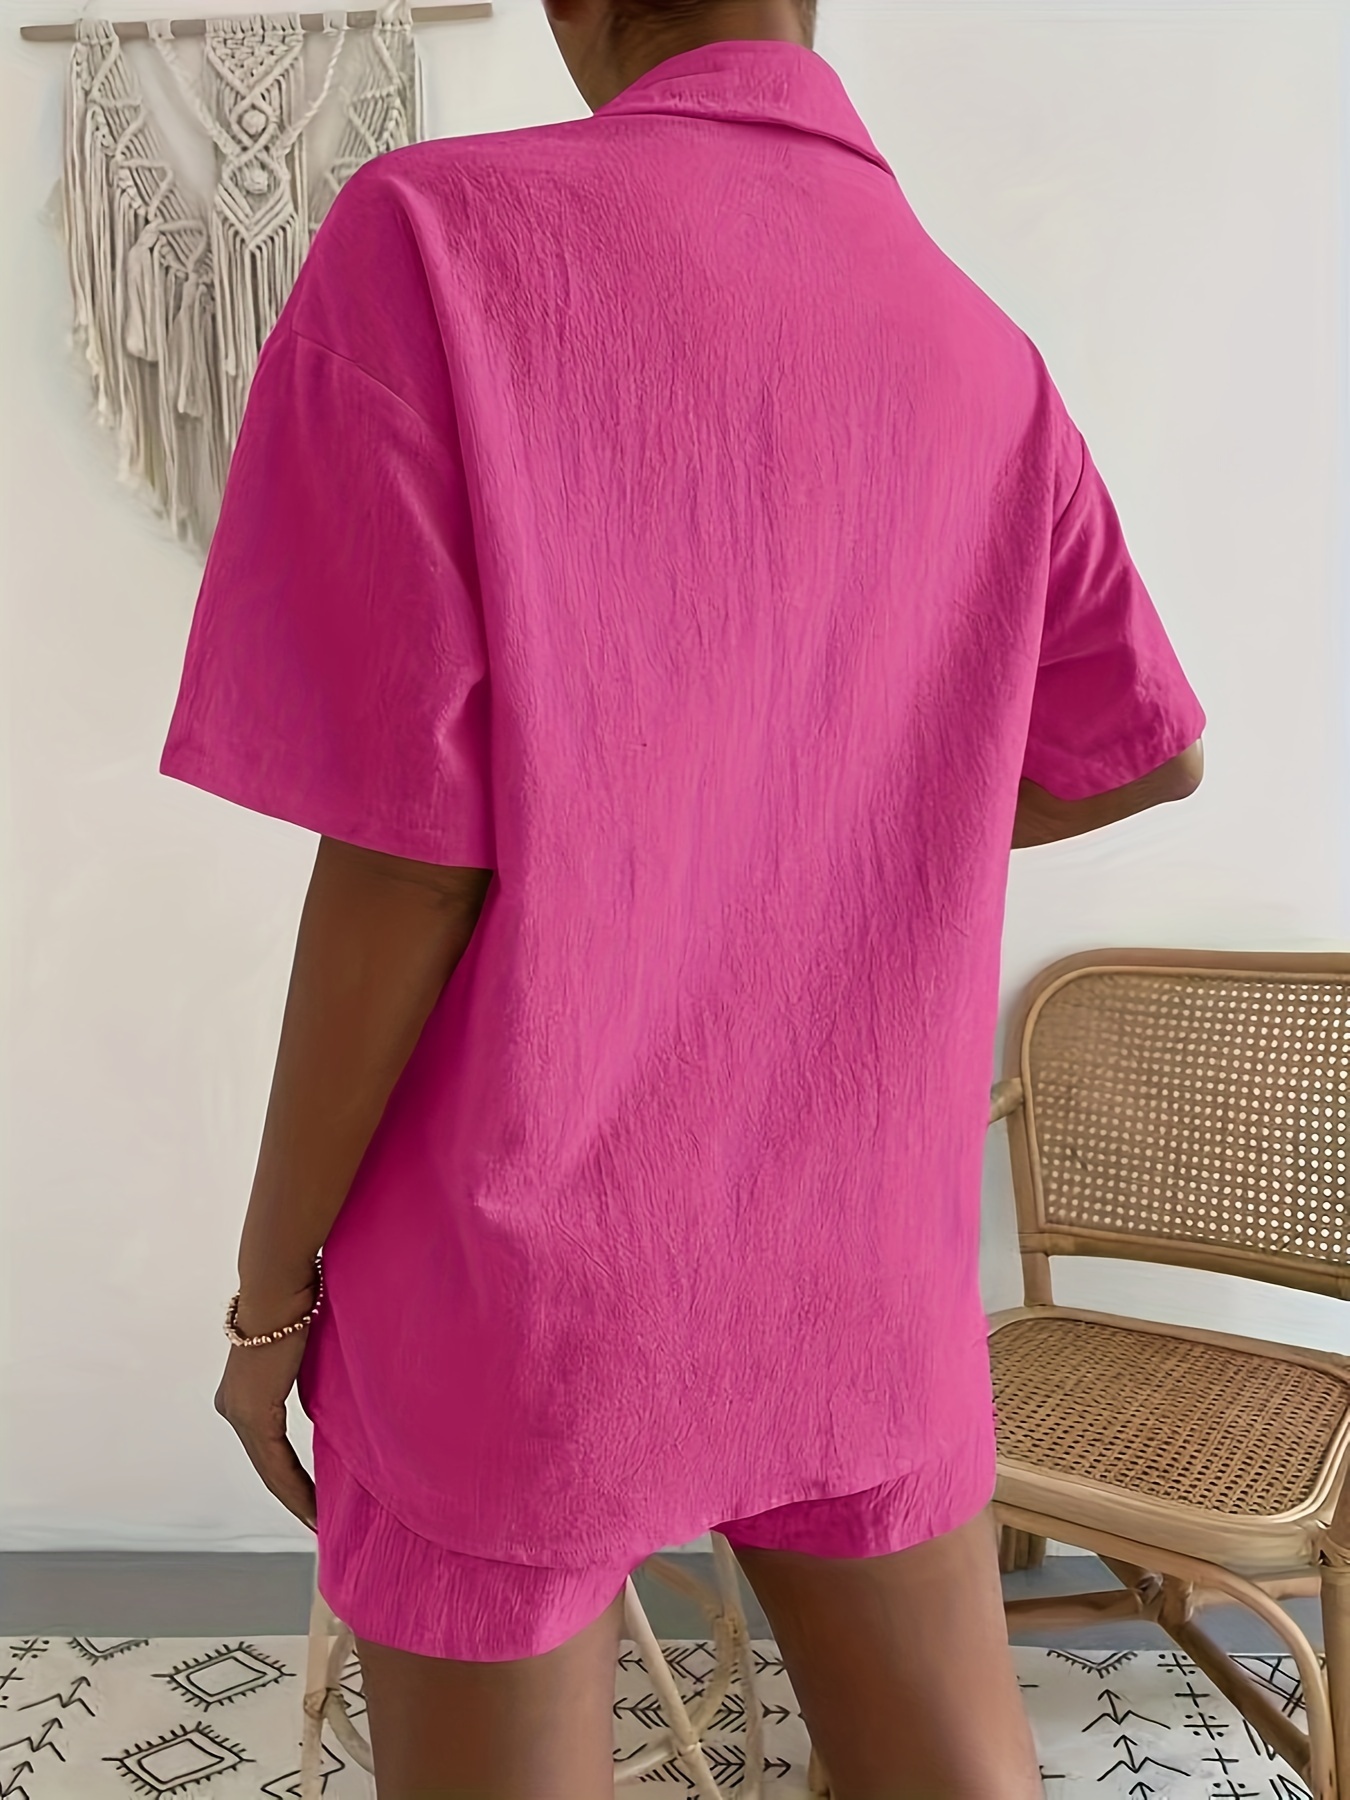 Vivid Pink Linen Short Sleeve Shirt - WOMEN Shirts